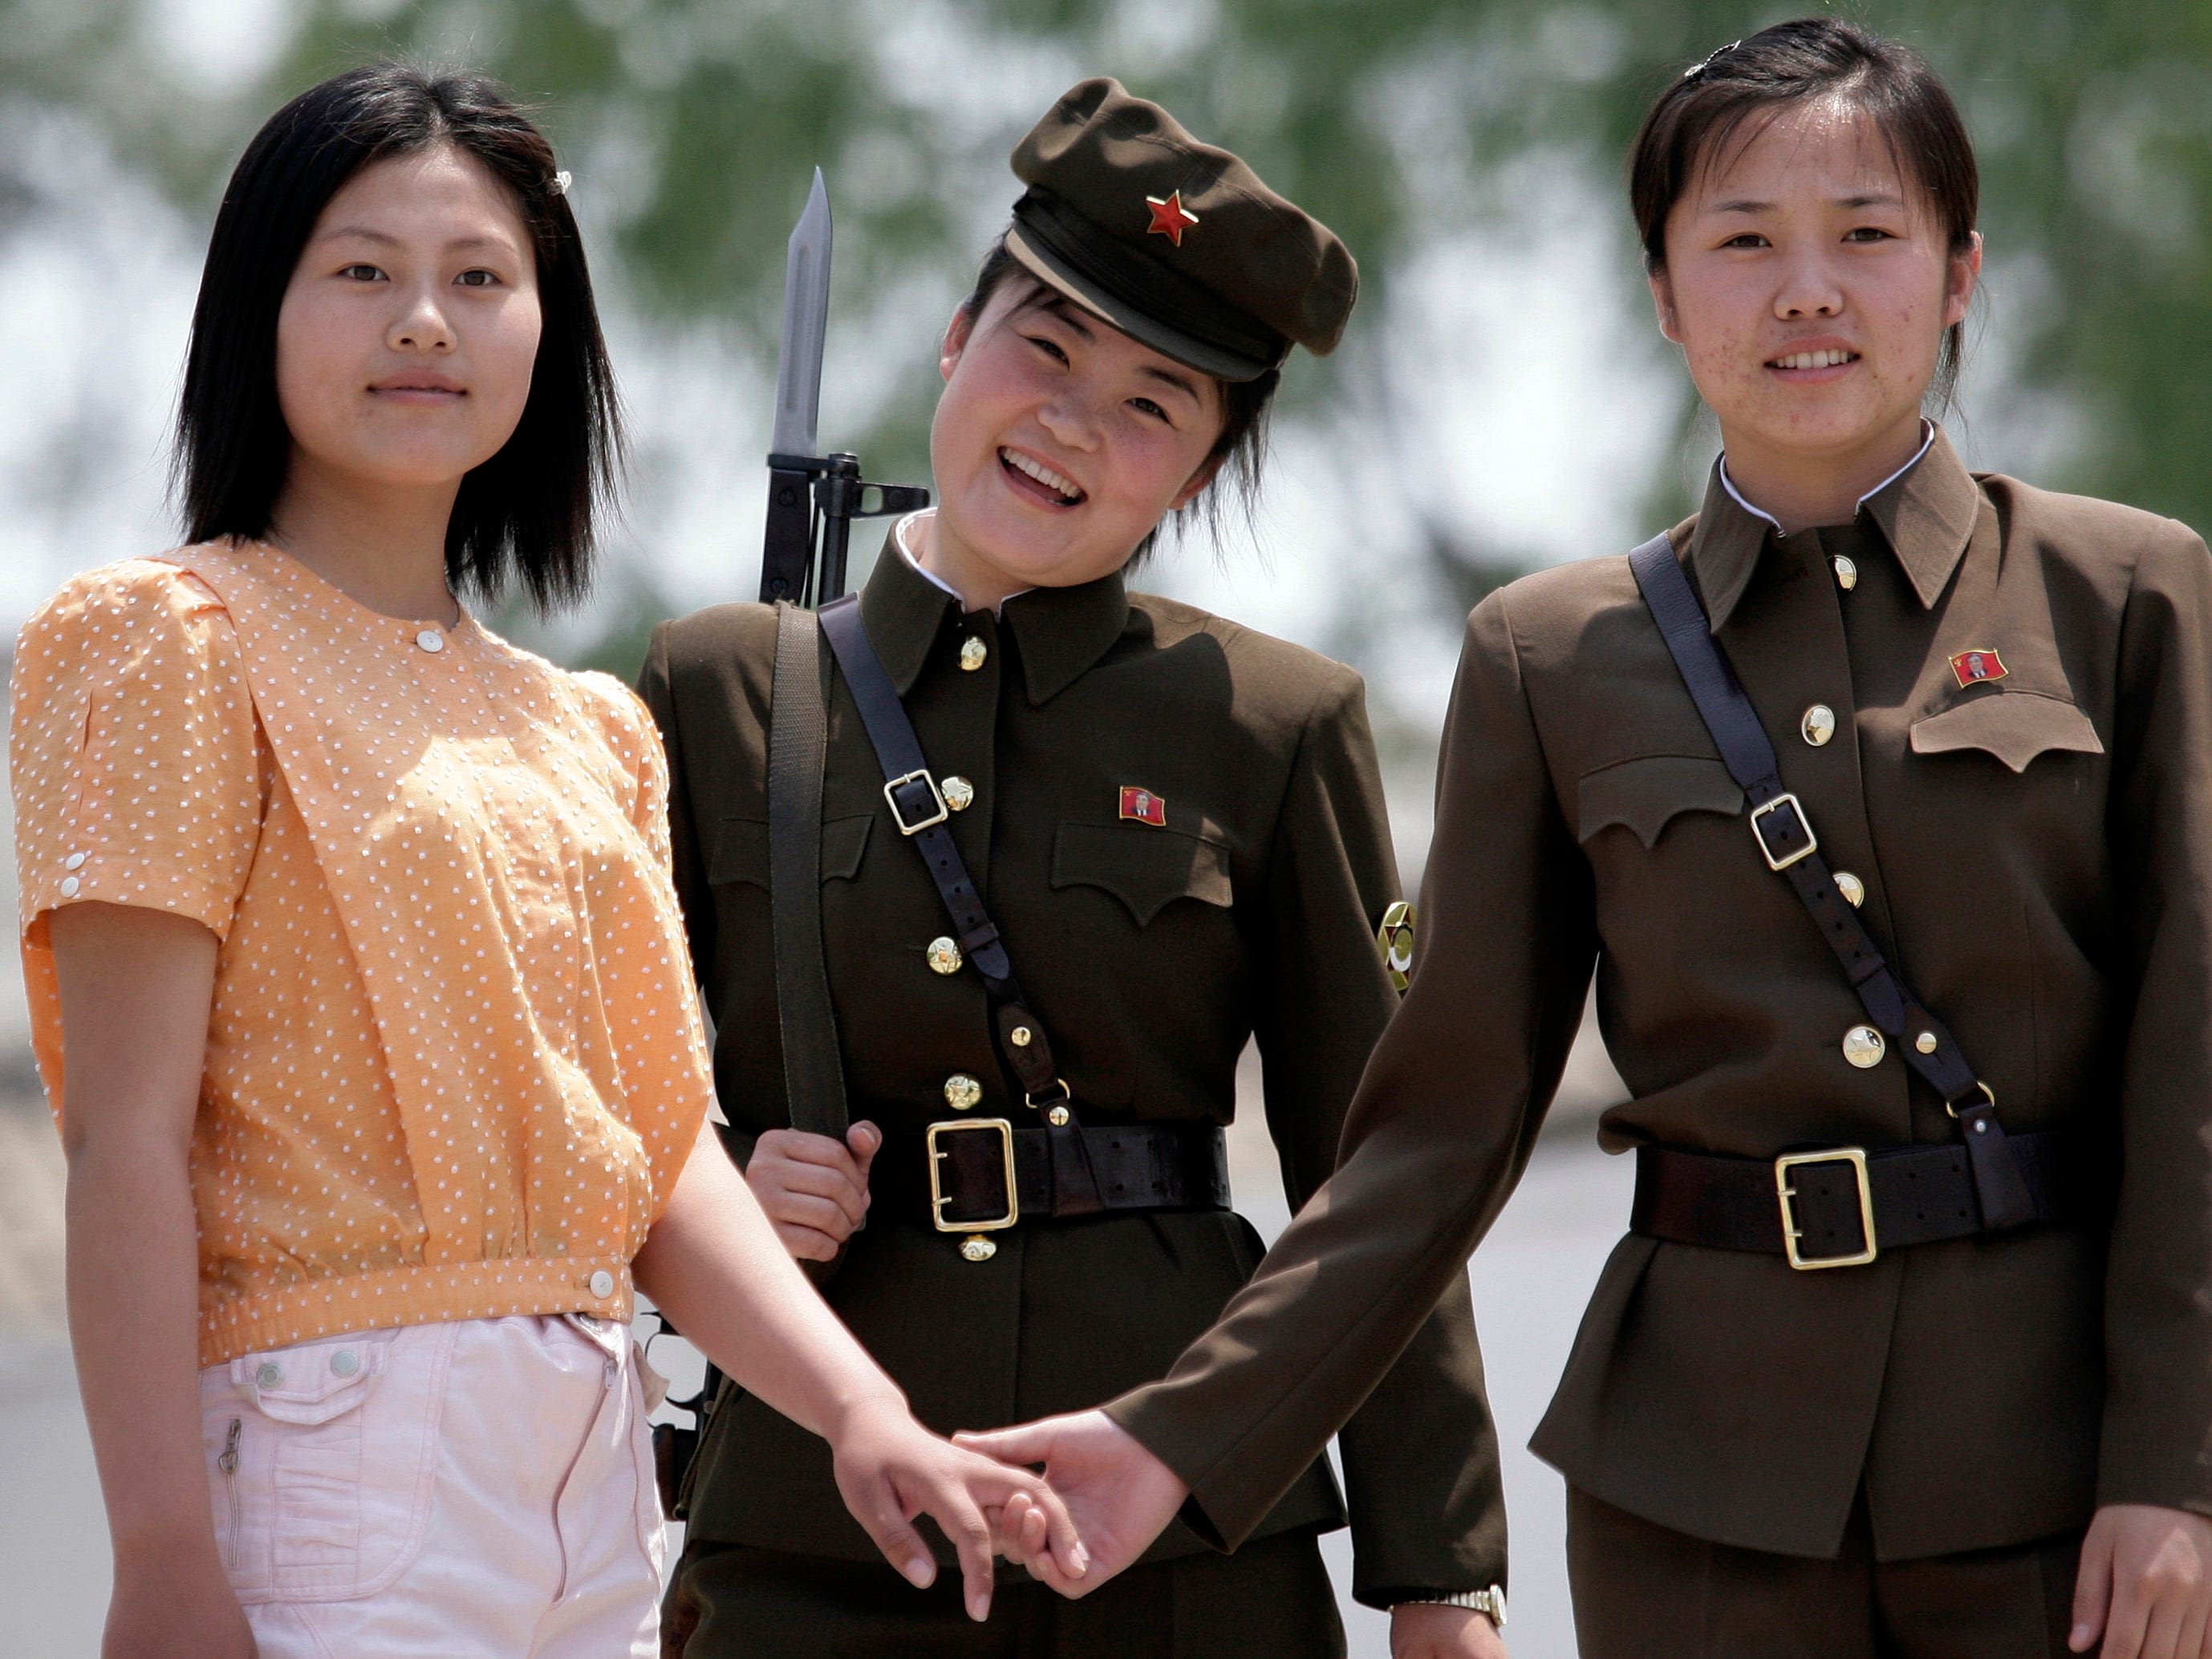 Rare photos show life inside North Korea's top-secret military